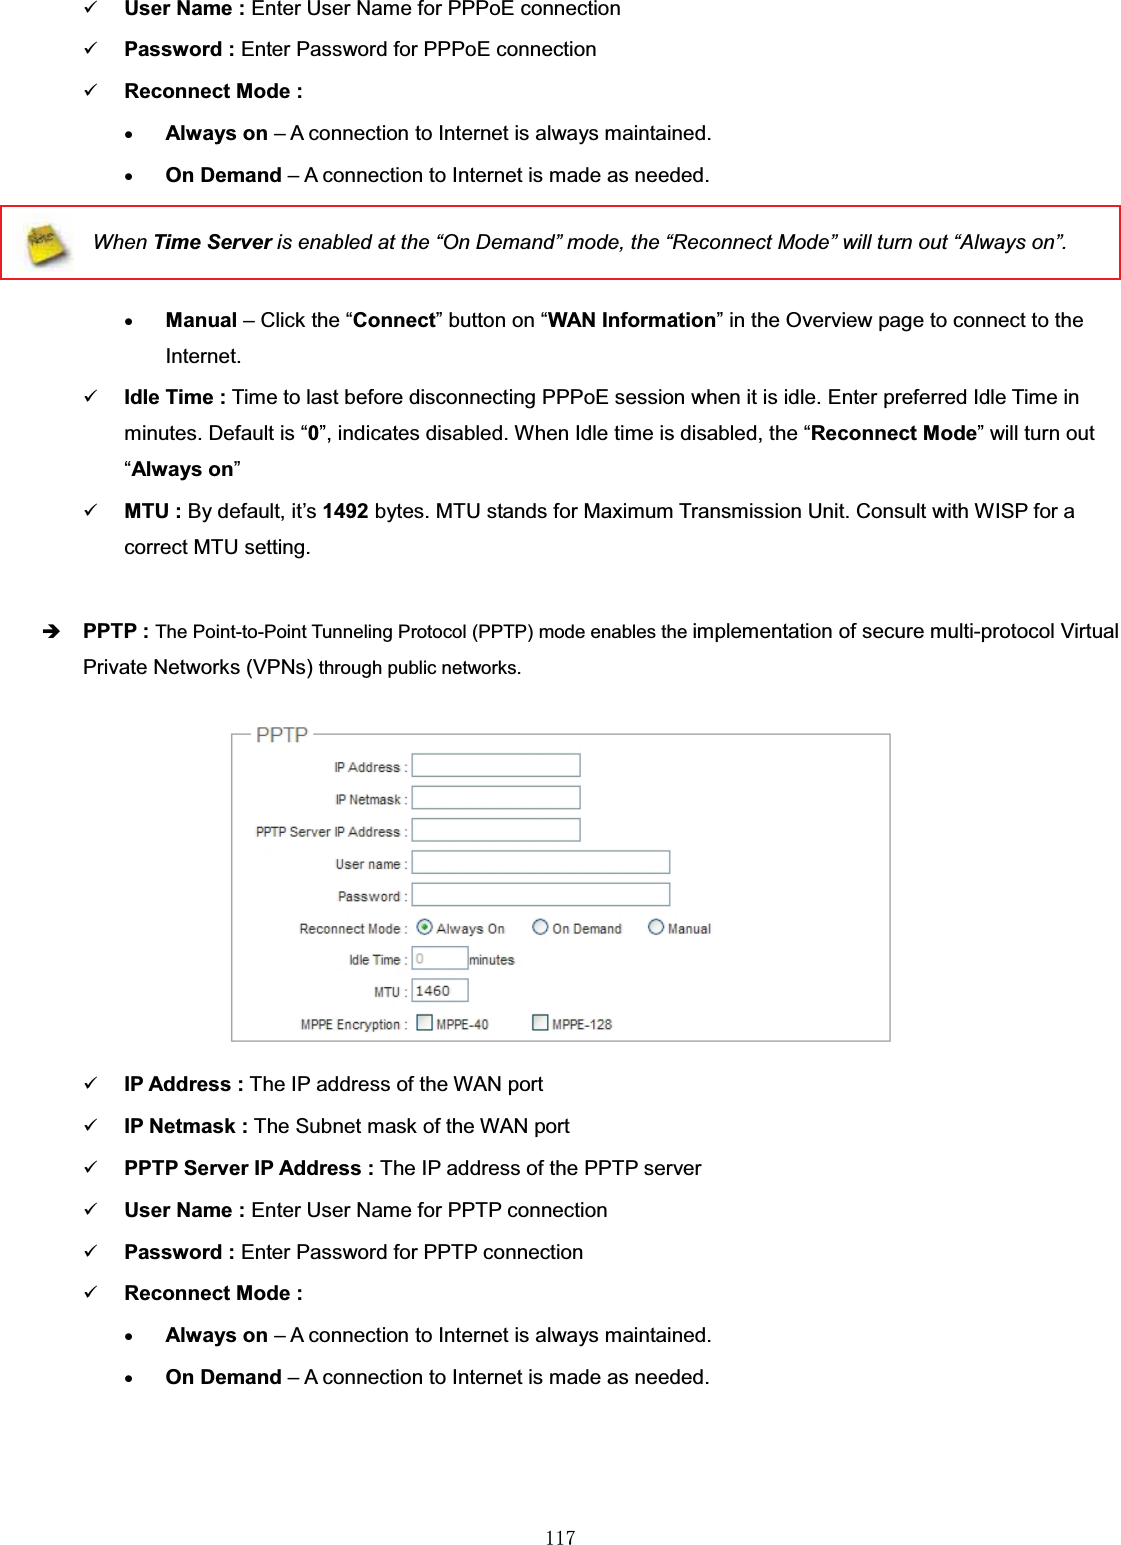 㻝㻝㻣9User Name : Enter User Name for PPPoE connection9Password : Enter Password for PPPoE connection9Reconnect Mode :xAlways on – A connection to Internet is always maintained.xOn Demand – A connection to Internet is made as needed.When Time Server is enabled at the “On Demand” mode, the “Reconnect Mode” will turn out “Always on”.xManual – Click the “Connect” button on “WAN Information” in the Overview page to connect to the Internet.9Idle Time : Time to last before disconnecting PPPoE session when it is idle. Enter preferred Idle Time in minutes. Default is “0”, indicates disabled. When Idle time is disabled, the “Reconnect Mode” will turn out “Always on”9MTU : By default, it’s 1492 bytes. MTU stands for Maximum Transmission Unit. Consult with WISP for a correct MTU setting.ÎPPTP : The Point-to-Point Tunneling Protocol (PPTP) mode enables the implementation of secure multi-protocol Virtual Private Networks (VPNs) through public networks.9IP Address : The IP address of the WAN port9IP Netmask : The Subnet mask of the WAN port9PPTP Server IP Address : The IP address of the PPTP server9User Name : Enter User Name for PPTP connection9Password : Enter Password for PPTP connection9Reconnect Mode :xAlways on – A connection to Internet is always maintained.xOn Demand – A connection to Internet is made as needed.